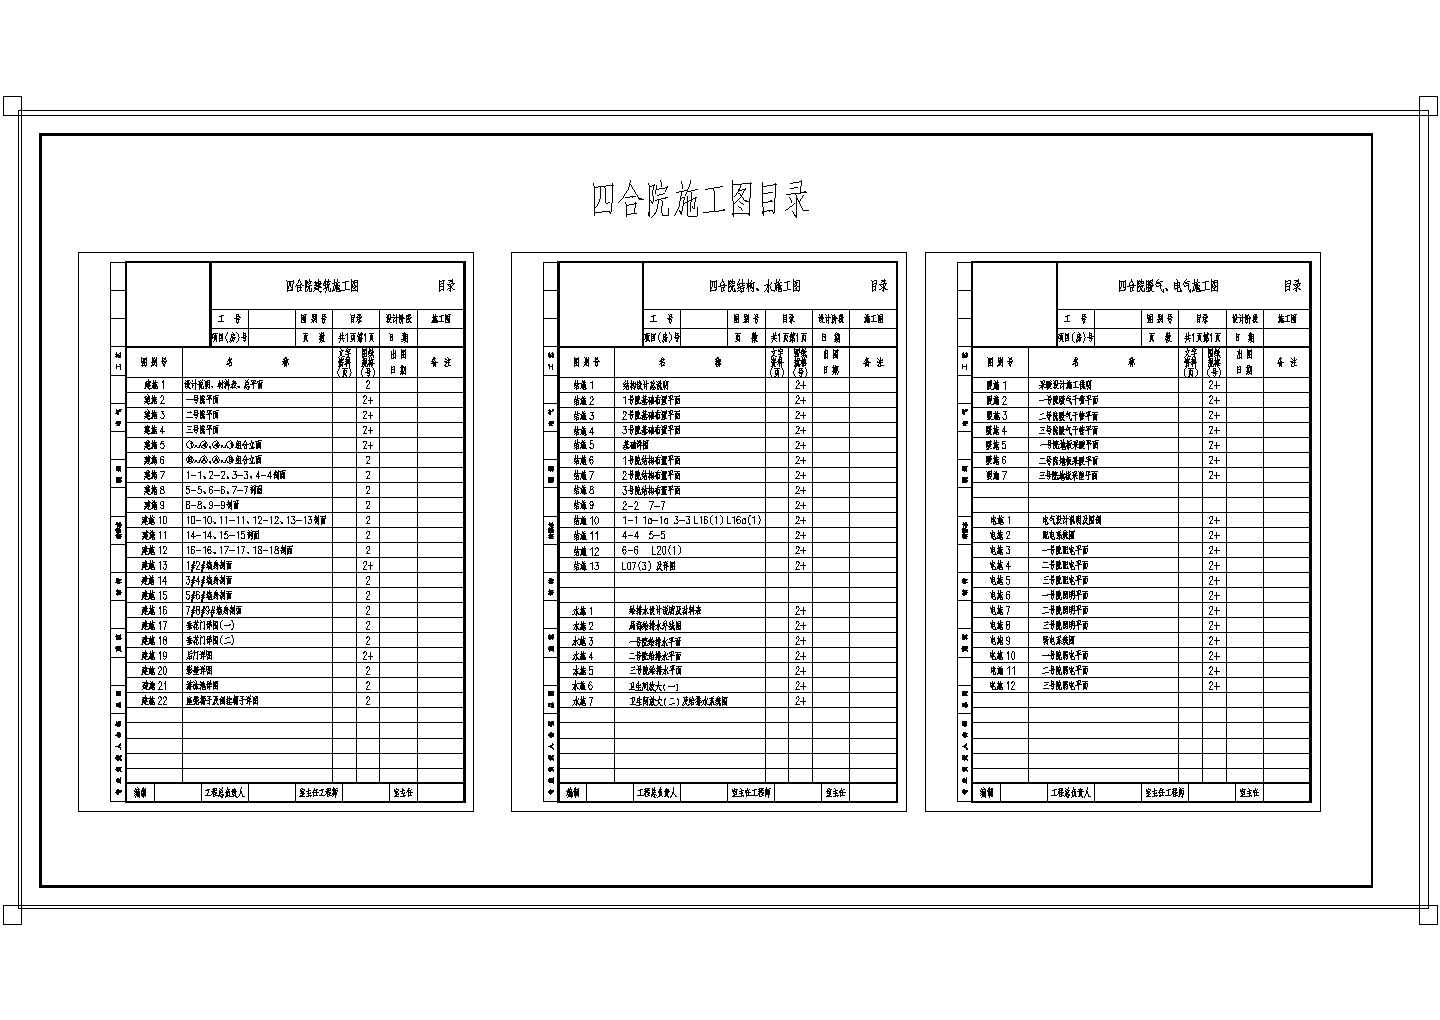 中式四合院全套施工图-结构-总目录